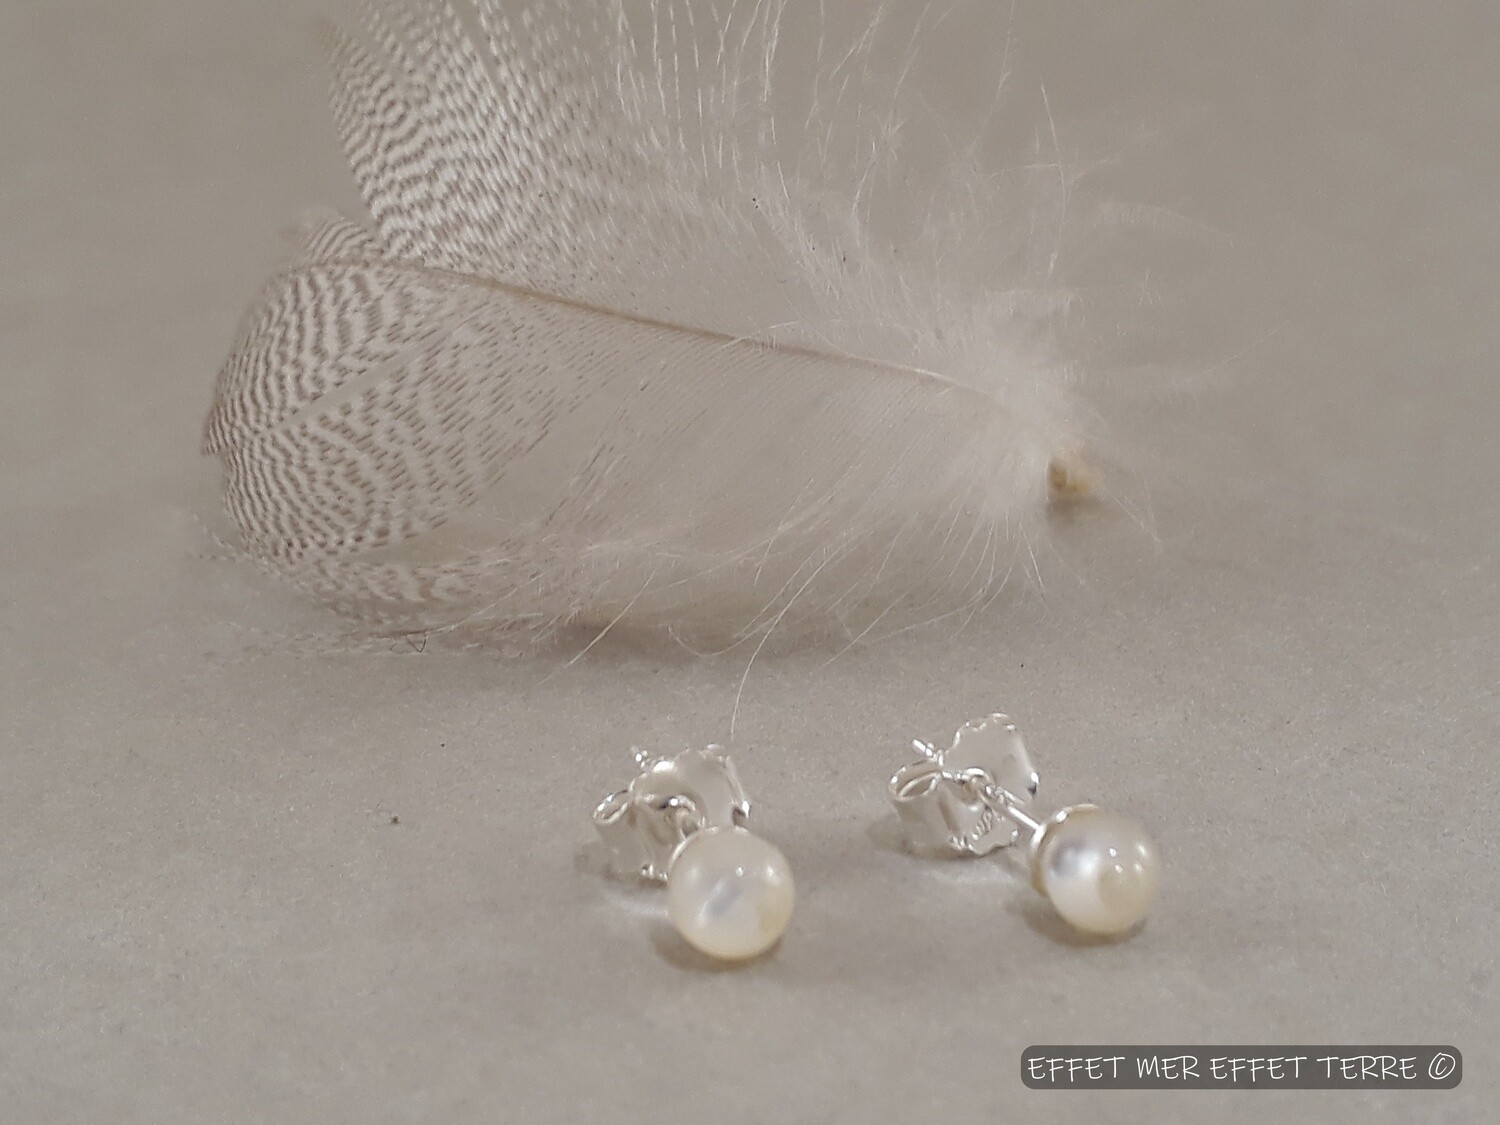 Boucles d'oreille perles de nacre blanche